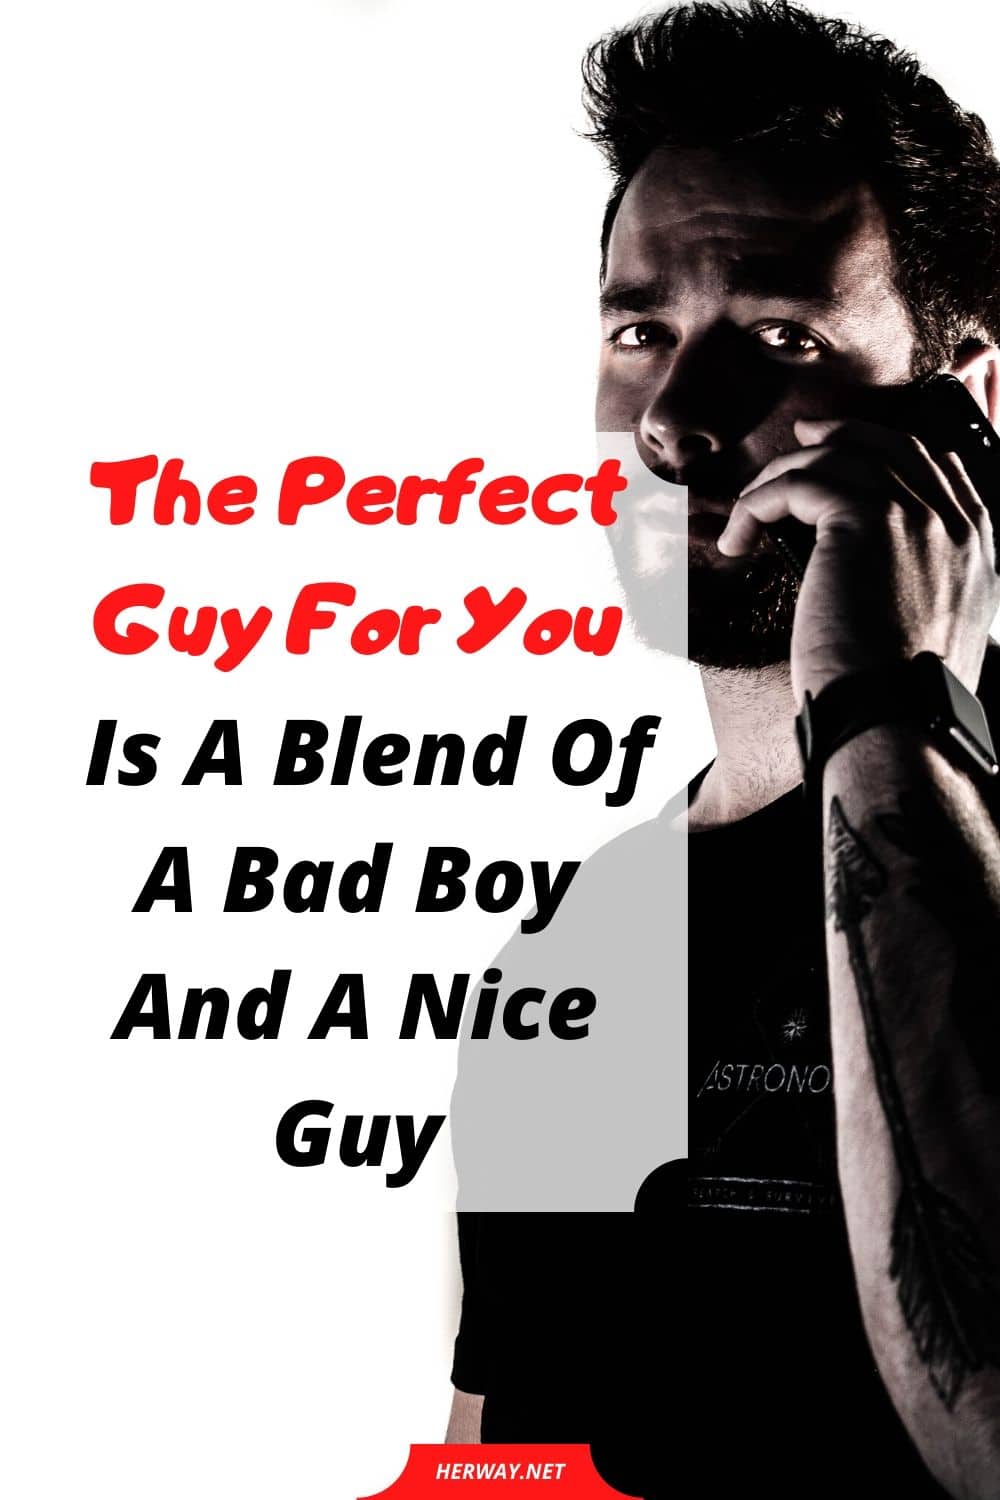 Il ragazzo perfetto per te è un mix di cattivo ragazzo e bravo ragazzo